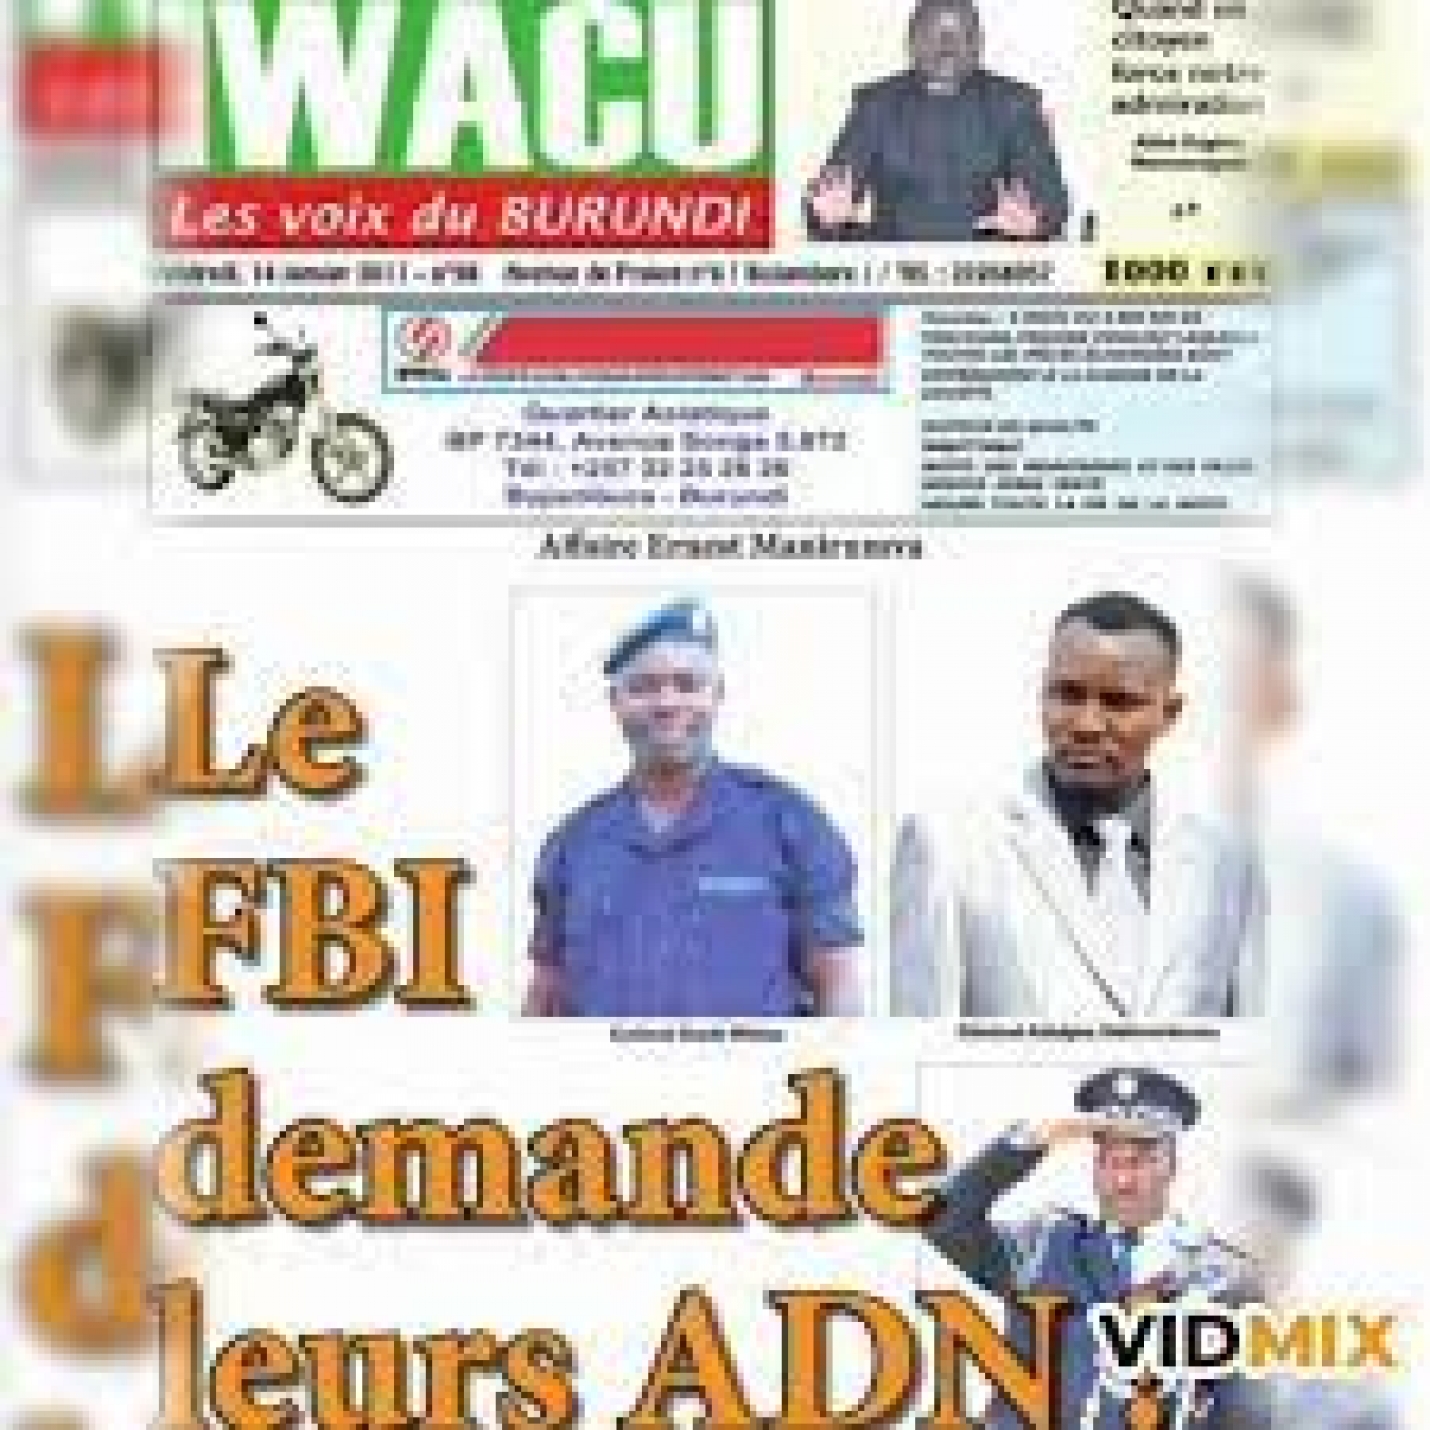 Burundi : Justice pour Ernest Manirumva !